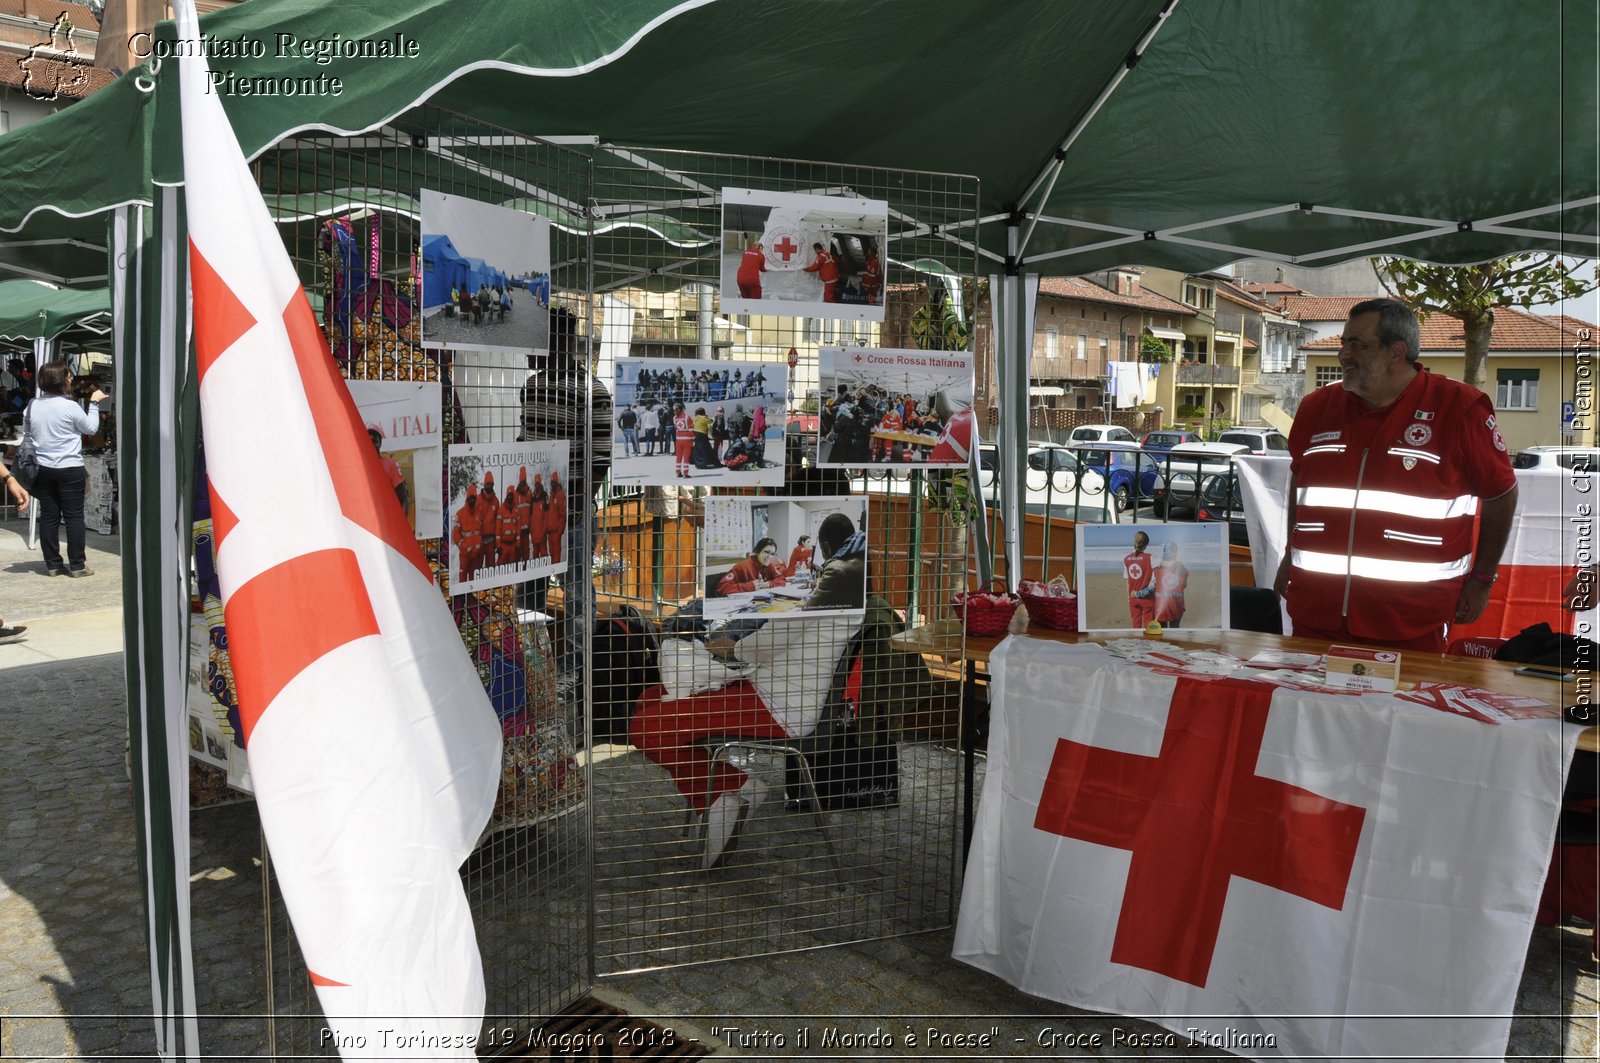 Pino Torinese 19 Maggio 2018 - "Tutto il Mondo  Paese" - Croce Rossa Italiana- Comitato Regionale del Piemonte